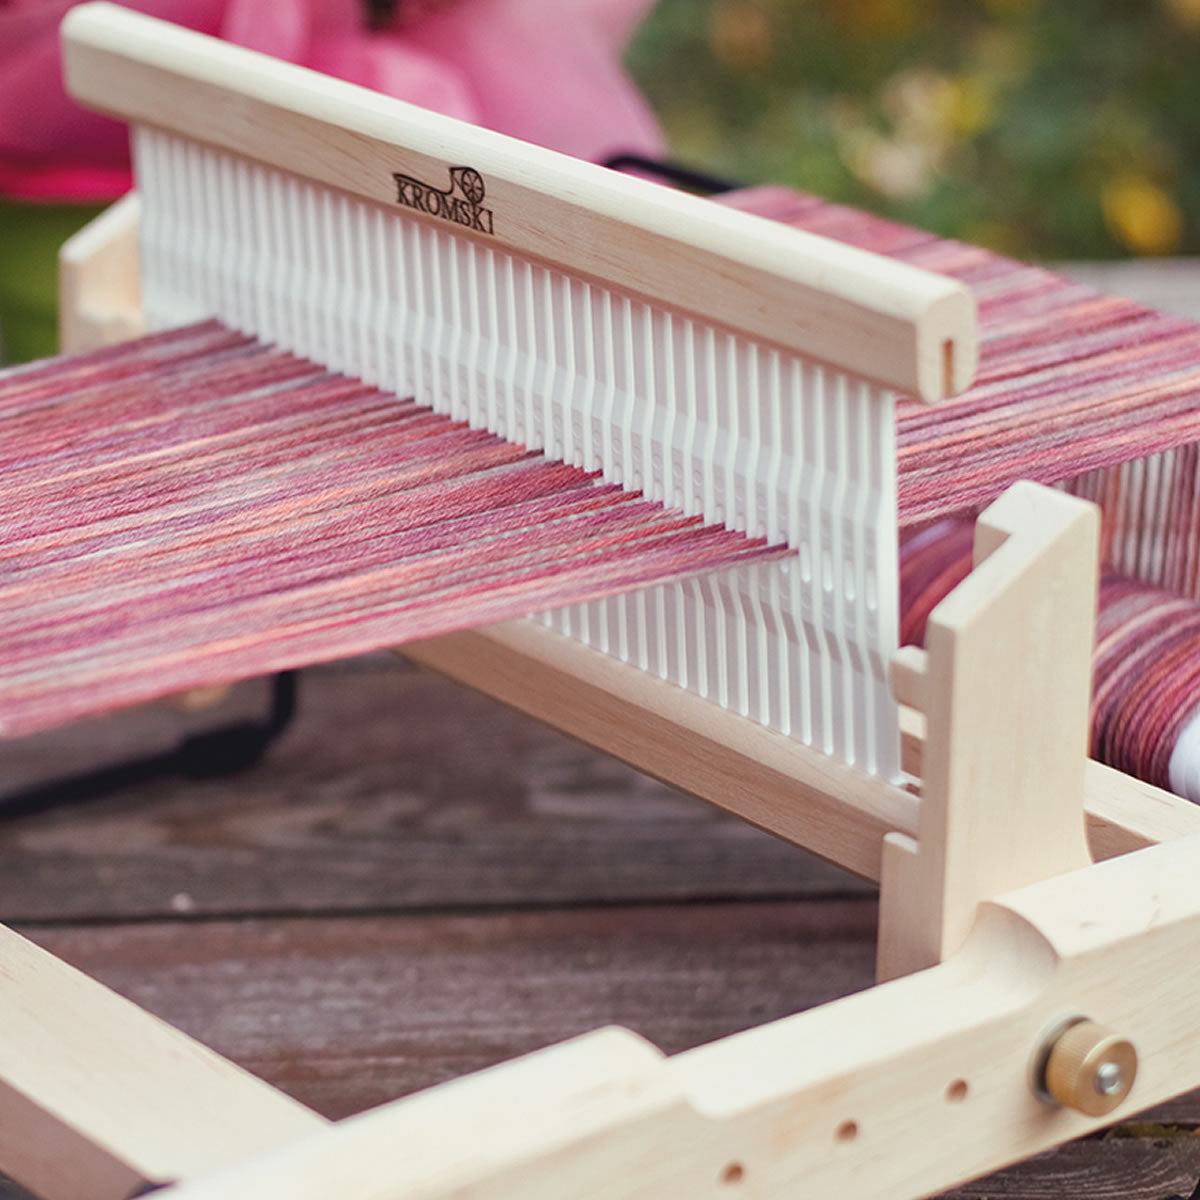 presto complete weaving kit